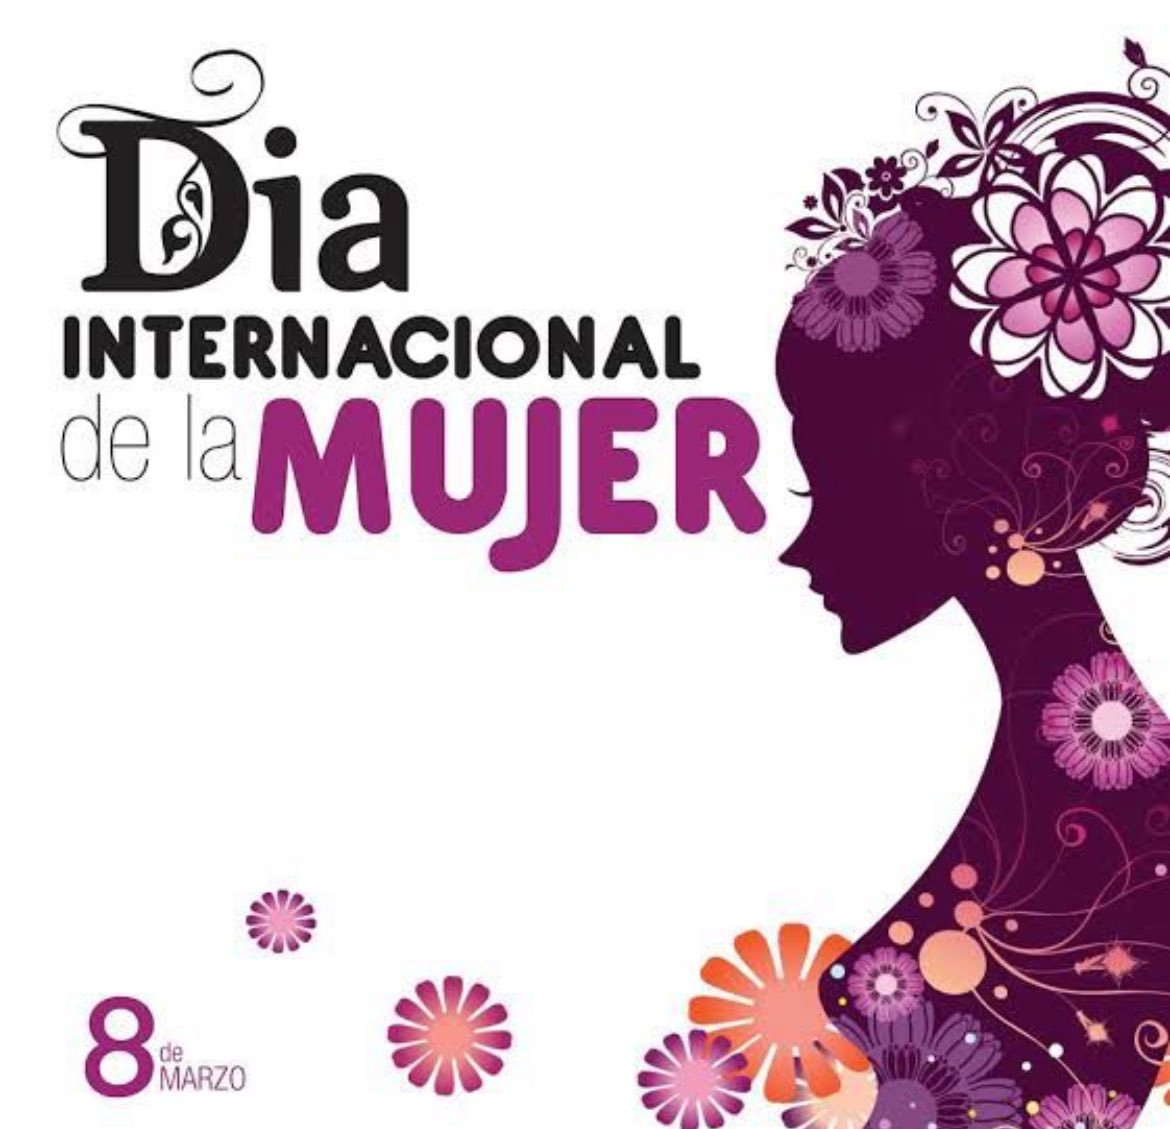 Buenos días y excelente Día Internacional de la Mujer felicidades a todas
@AMAduaneras @AduanasMx 
@ClaaMx 
@AAACNL 
@IMECE_MX 
@ColegioCNPPD